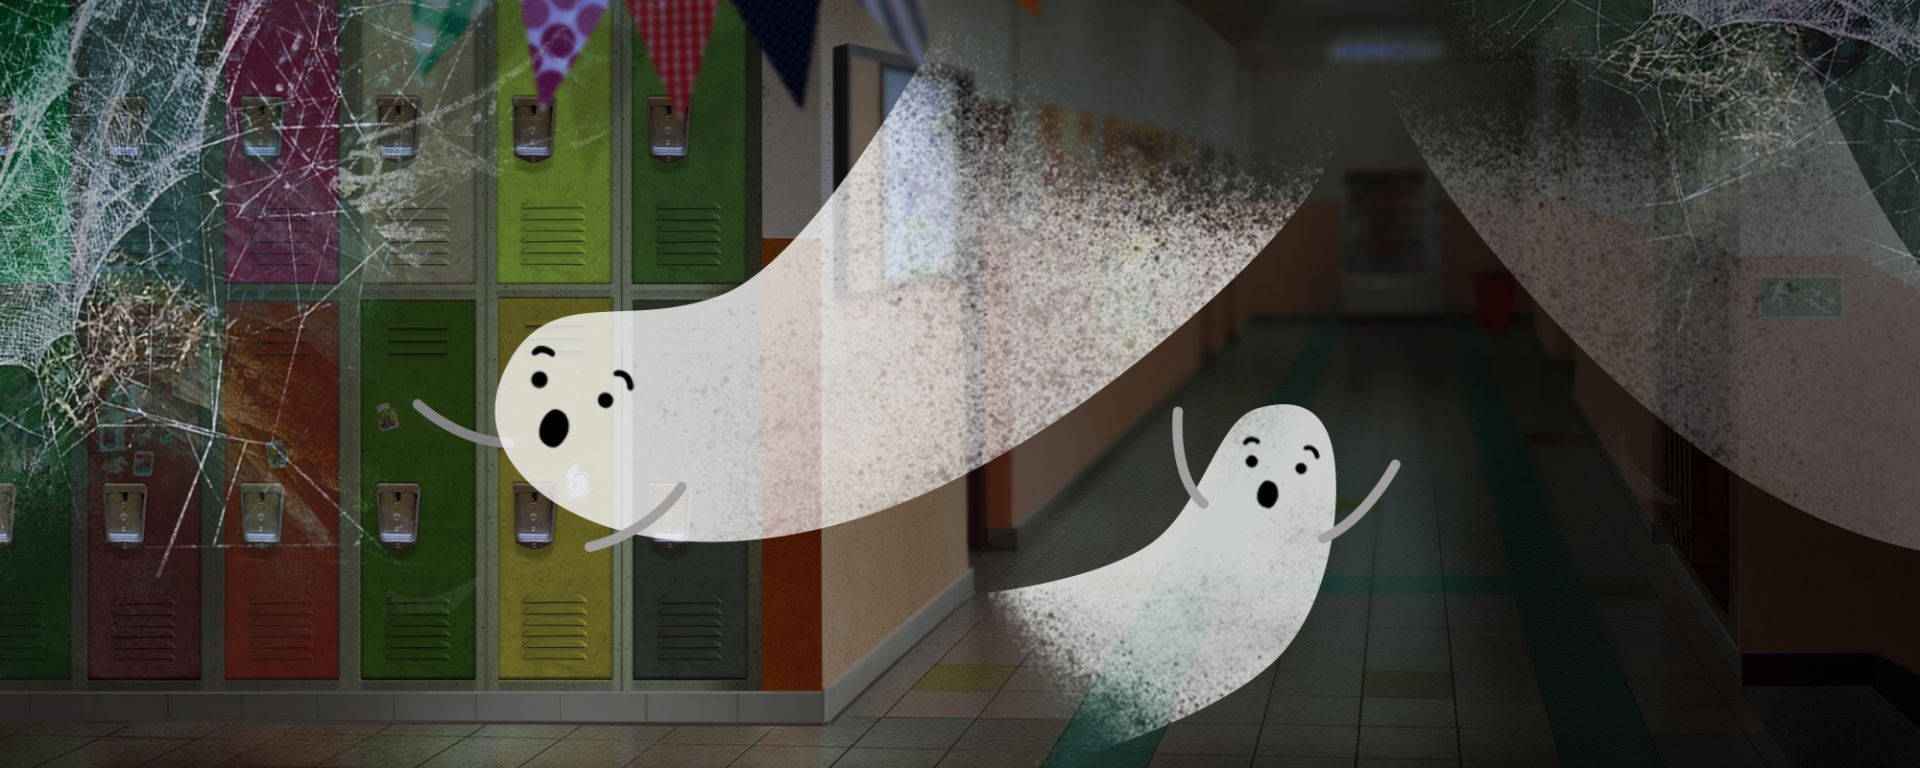 Na obrazku widac duchy latające w szkolnym korytarzu. Korytarz pokryty jest pajęczynami.